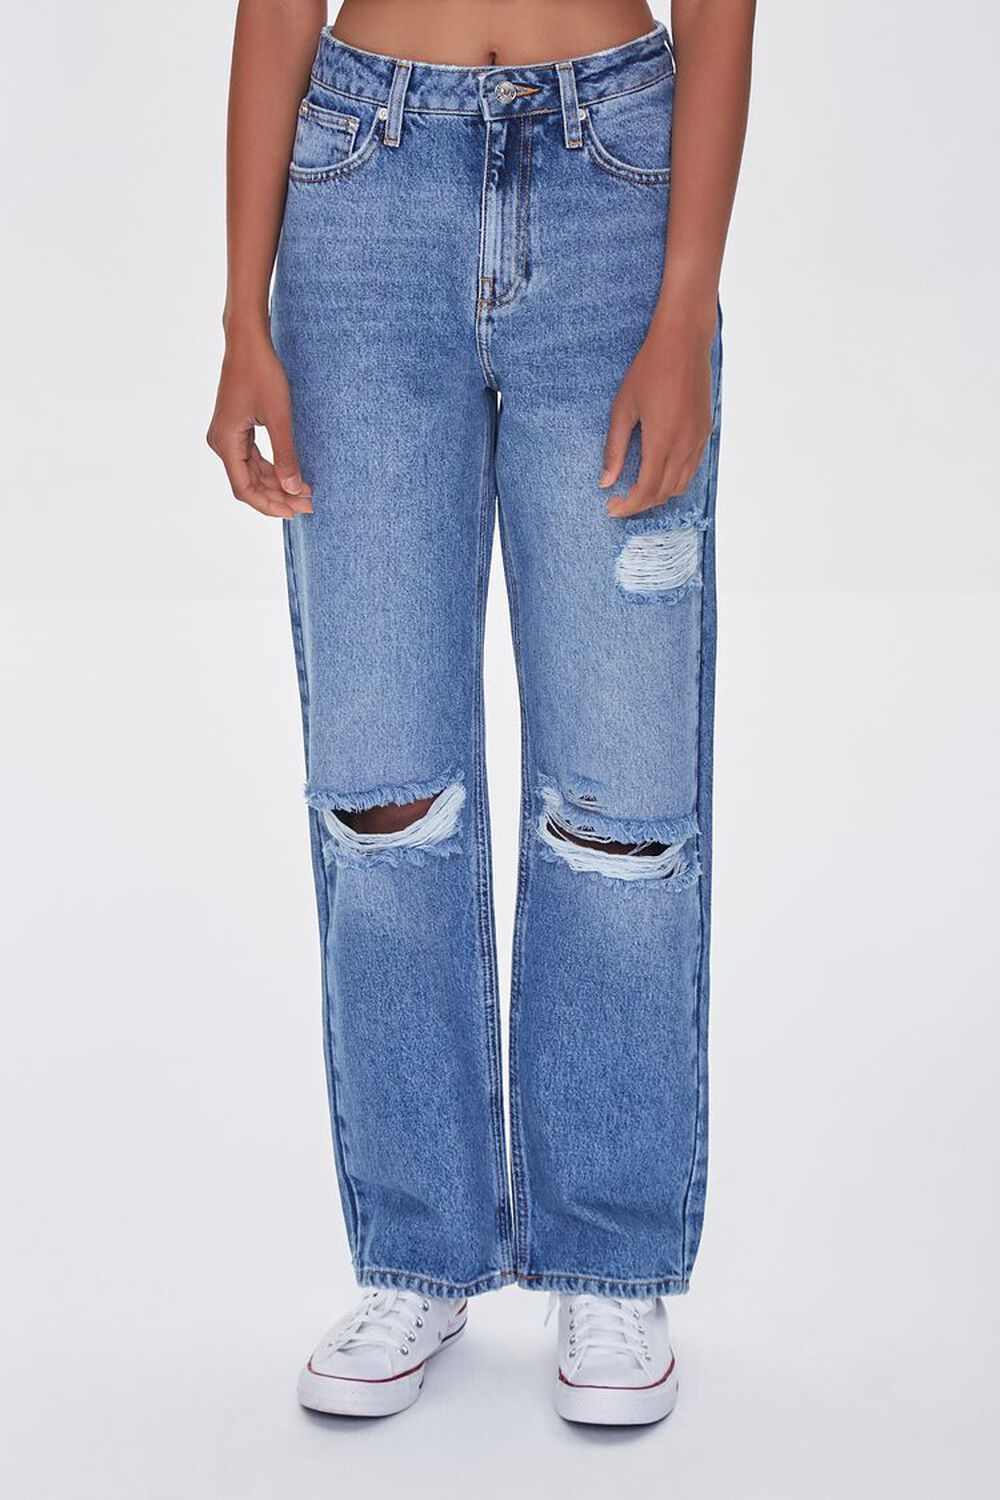 MEDIUM DENIM Premium Distressed 90s-Fit Jeans, image 2